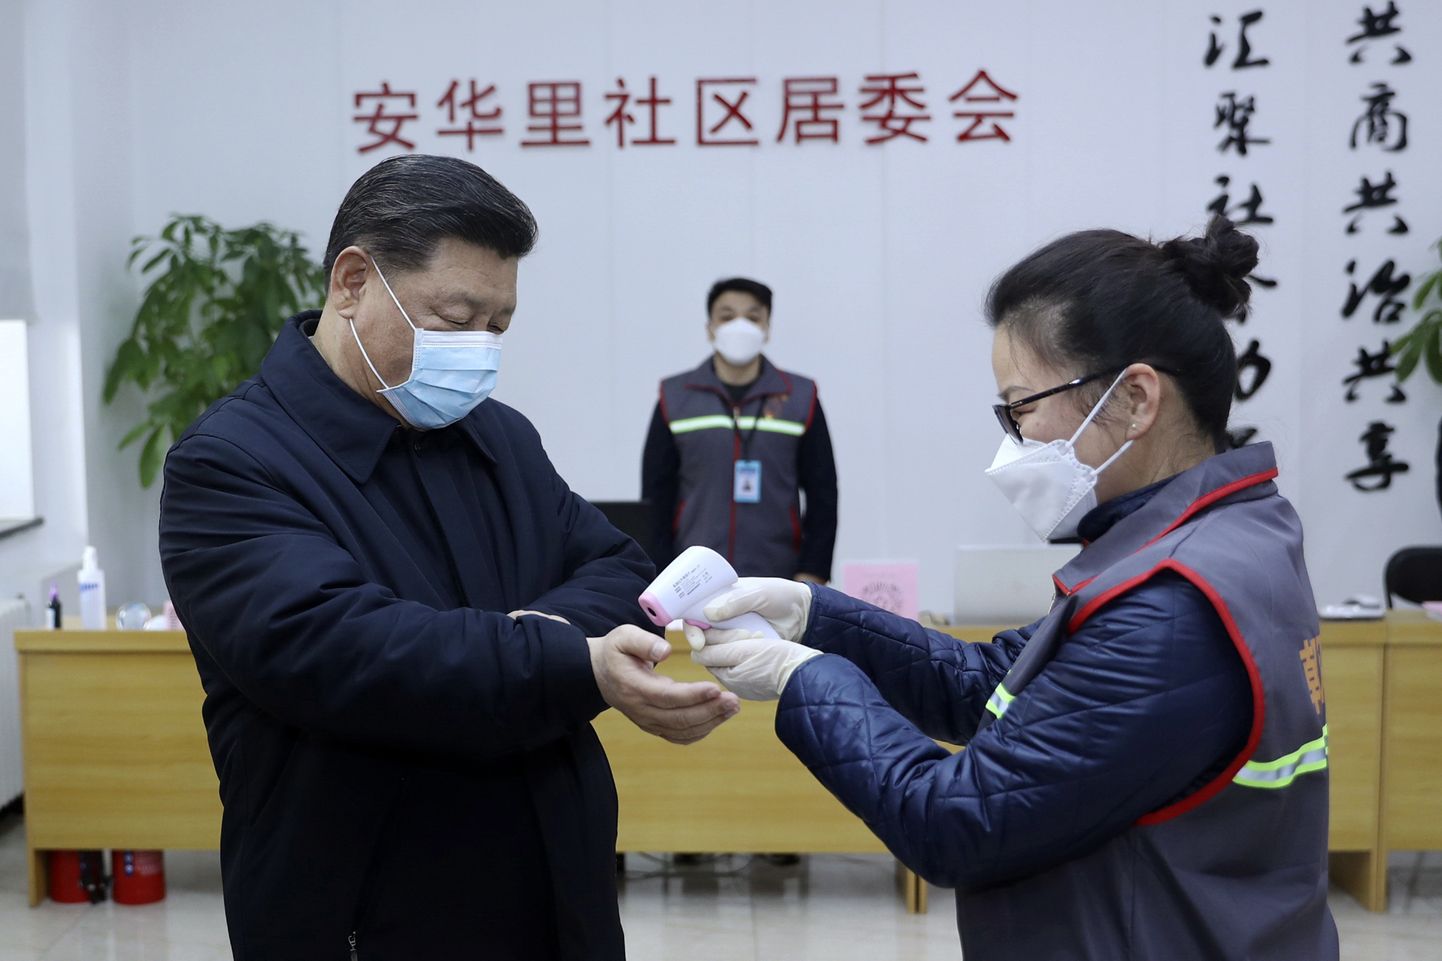 Hiina presidendil Xi Jinpingil mõõdetakse kehatemperatuuri.